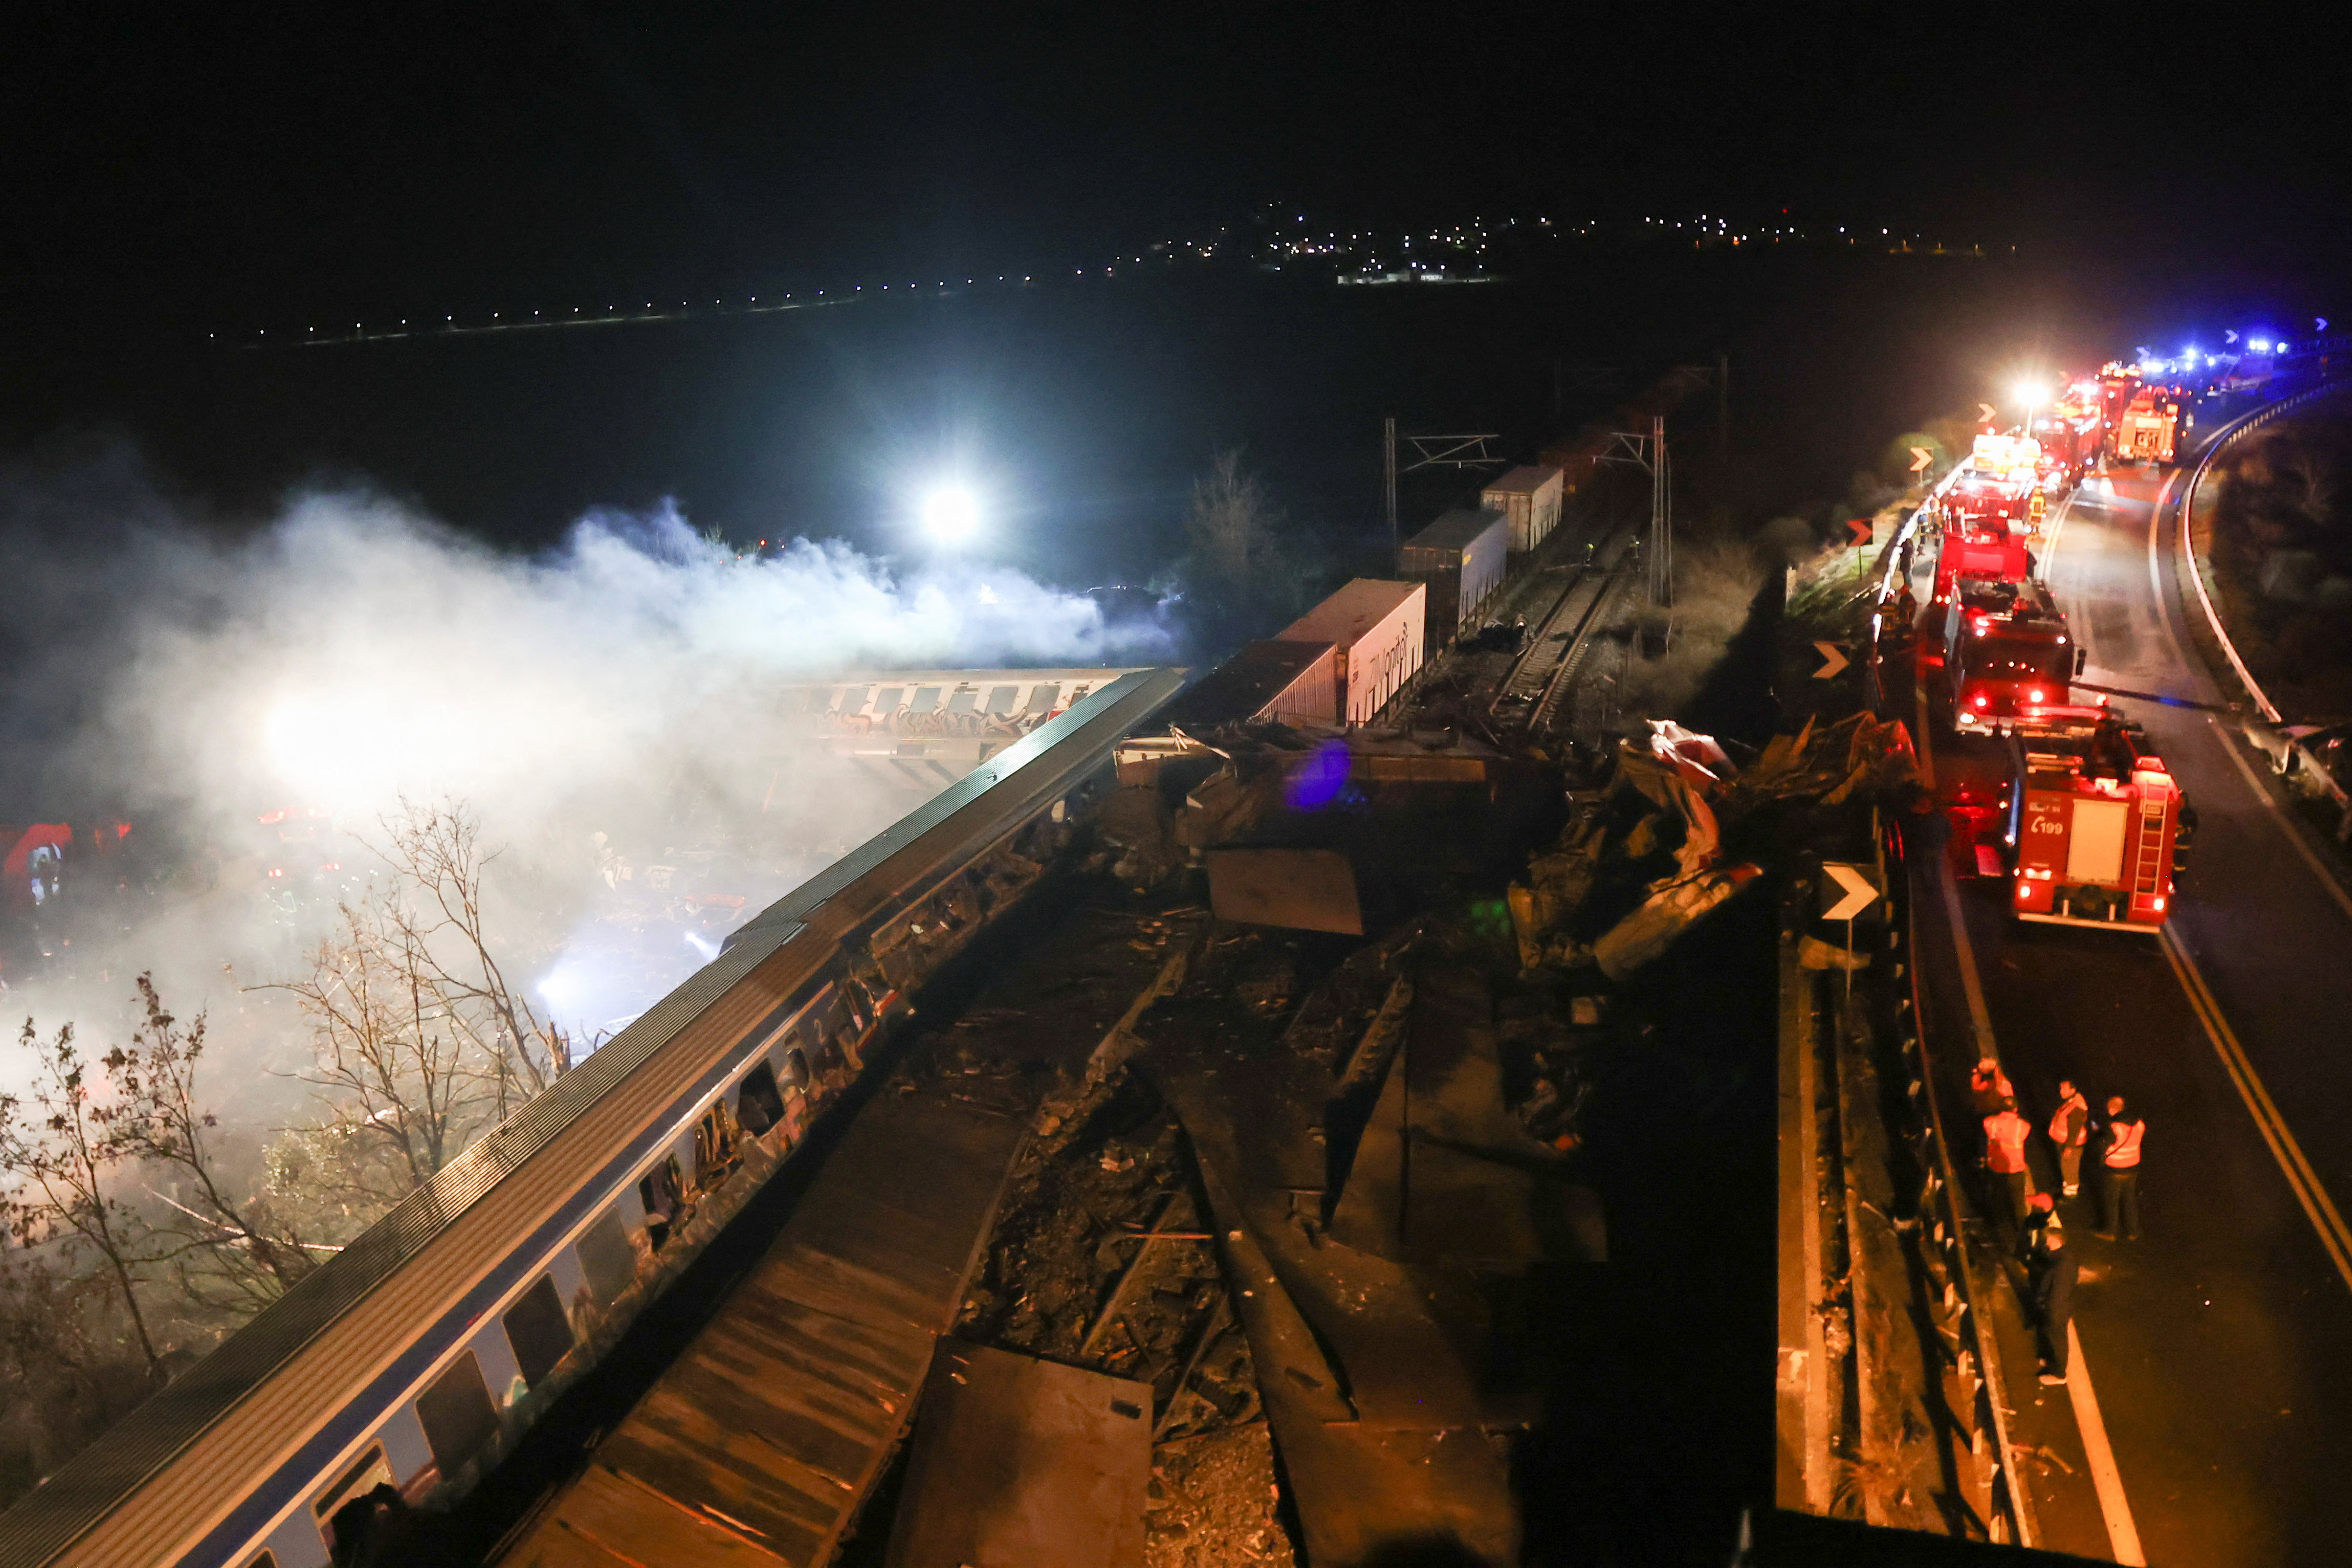 En los dos trenes, uno de pasajeros y otro de mercancías, viajaban unas 350 personas y 20 tripulantes, explicó la empresa ferrocarril “Hellenic Train”. (REUTERS/Thanos Floulis)